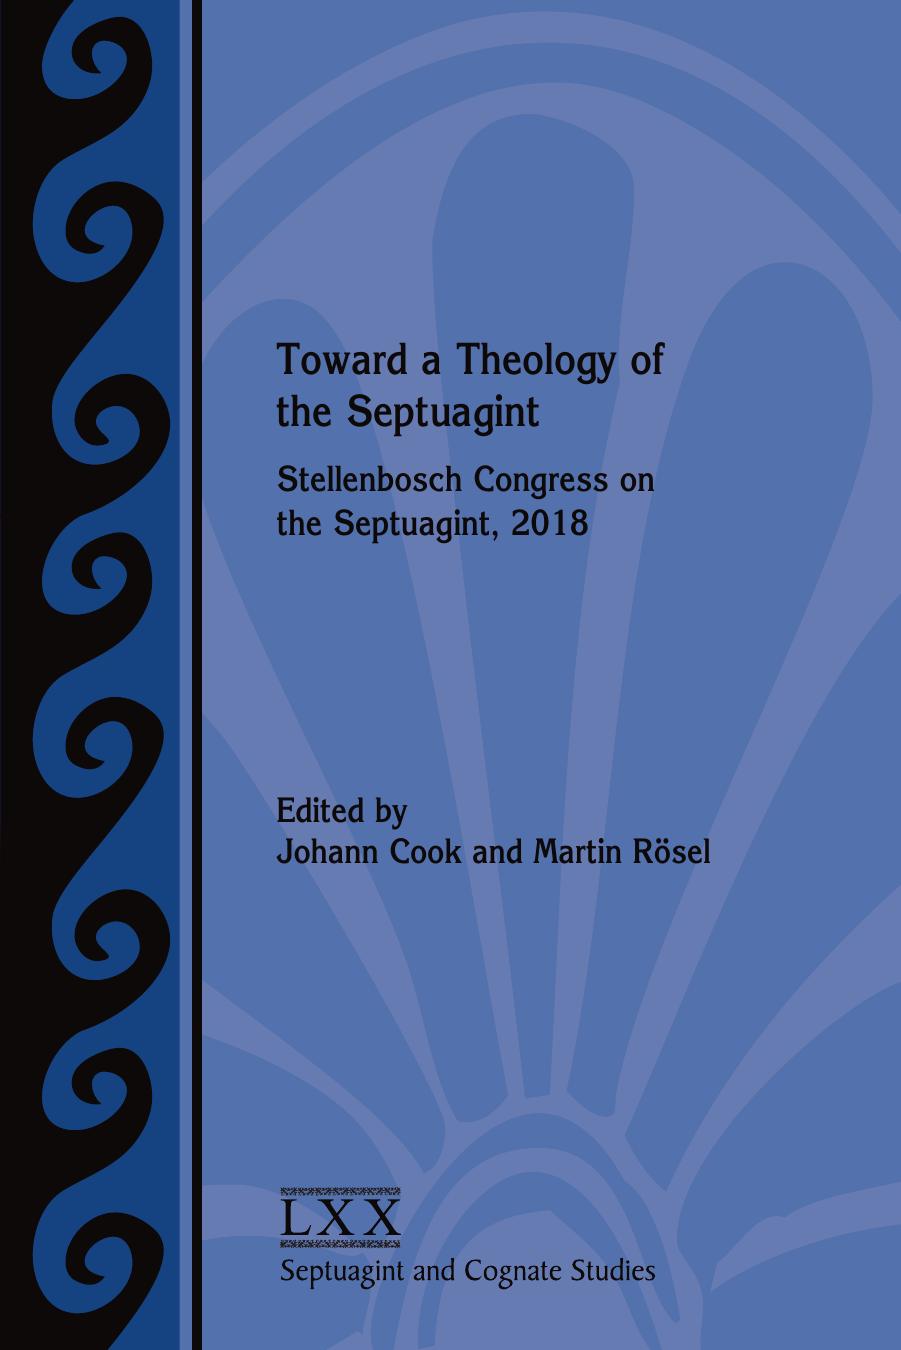 Toward a Theology of the Septuagint: Stellenbosch Congress on the Septuagint, 2018